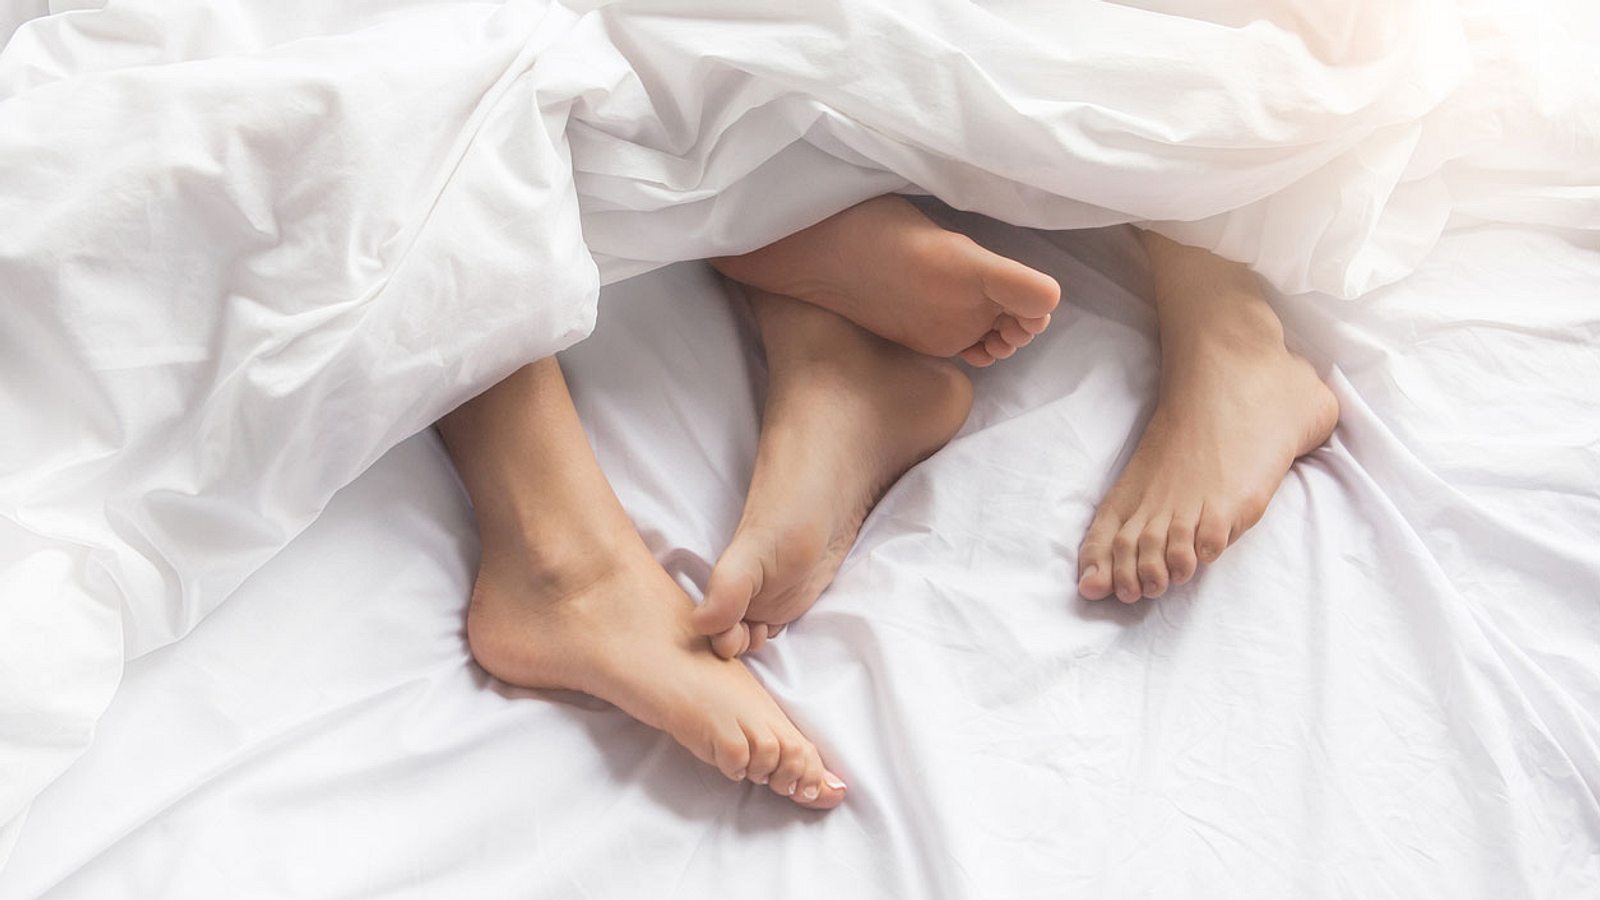 pies de dos personas en la cama con sábanas blancas